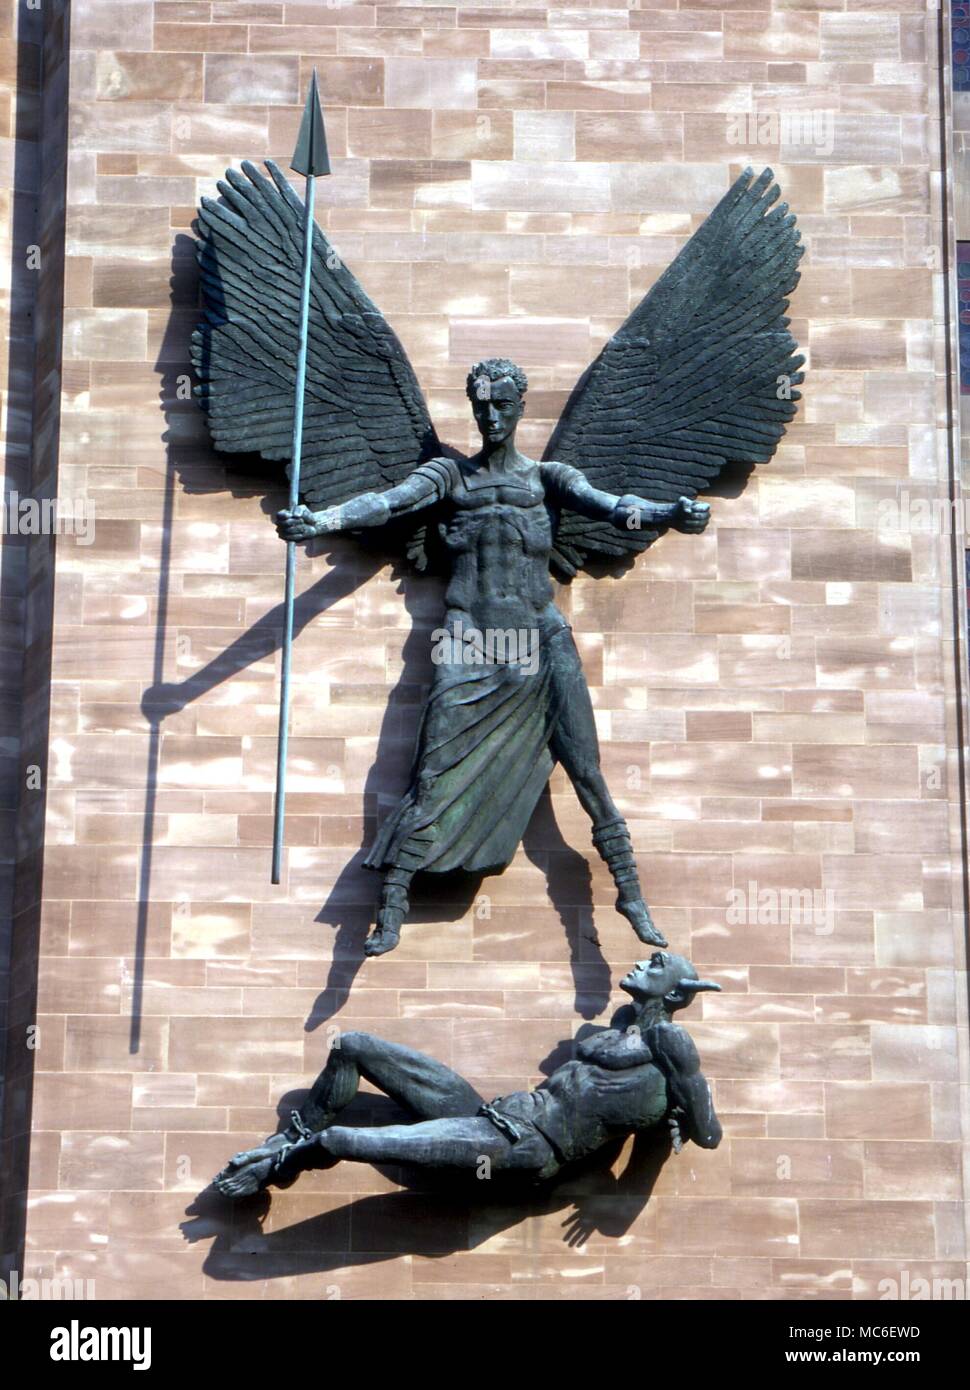 Engel - Erzengel Michael. Saint Michael spearing Satan. Statuen von Epsteins, an der Südwand der neuen Kathedrale von Coventry. 1962 geformt Stockfoto